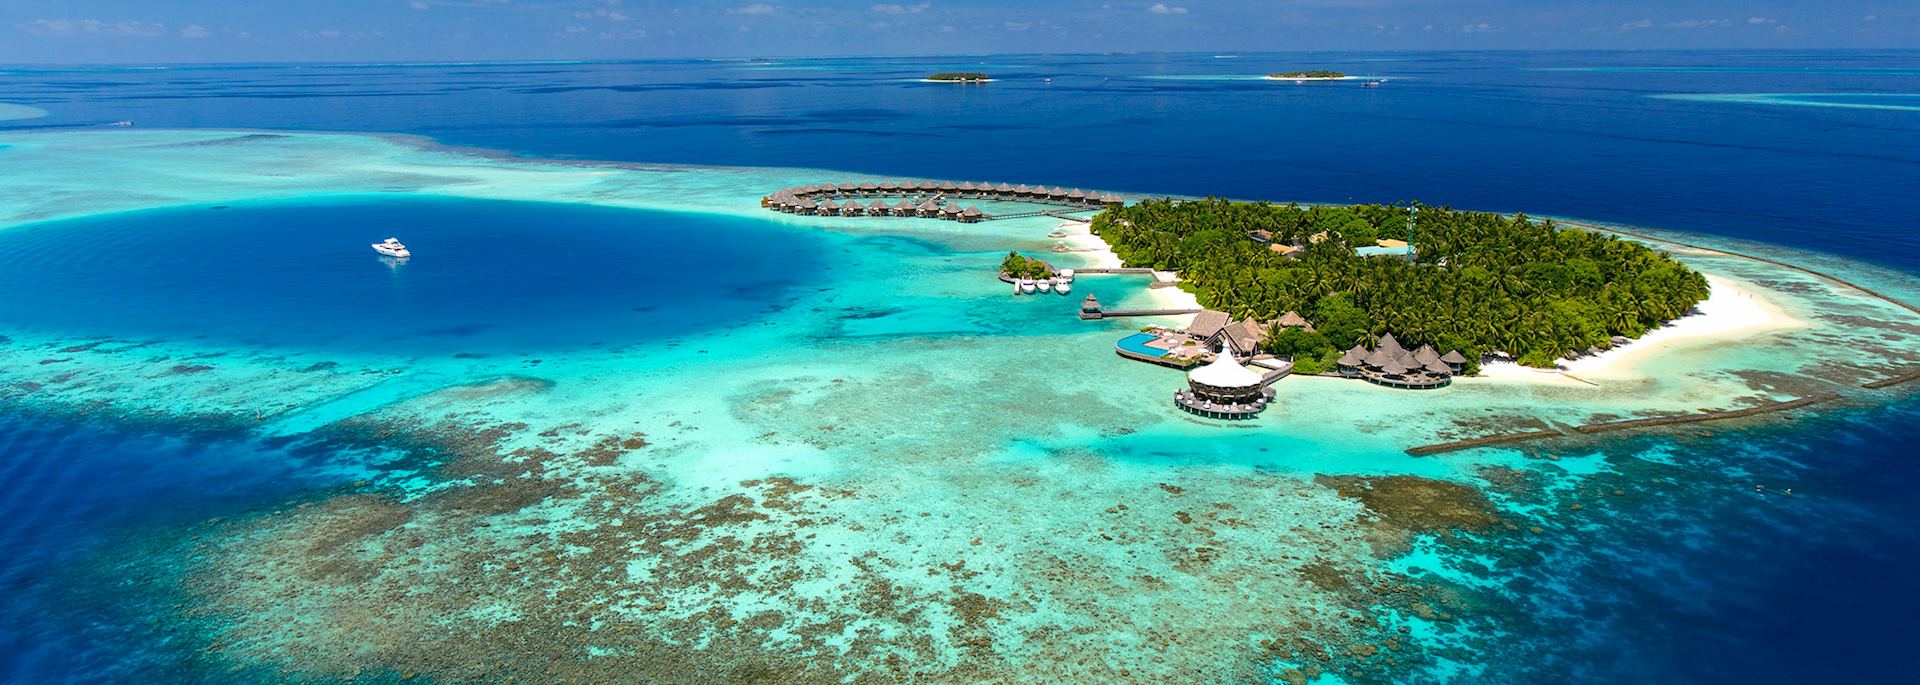 Baros, Maldives